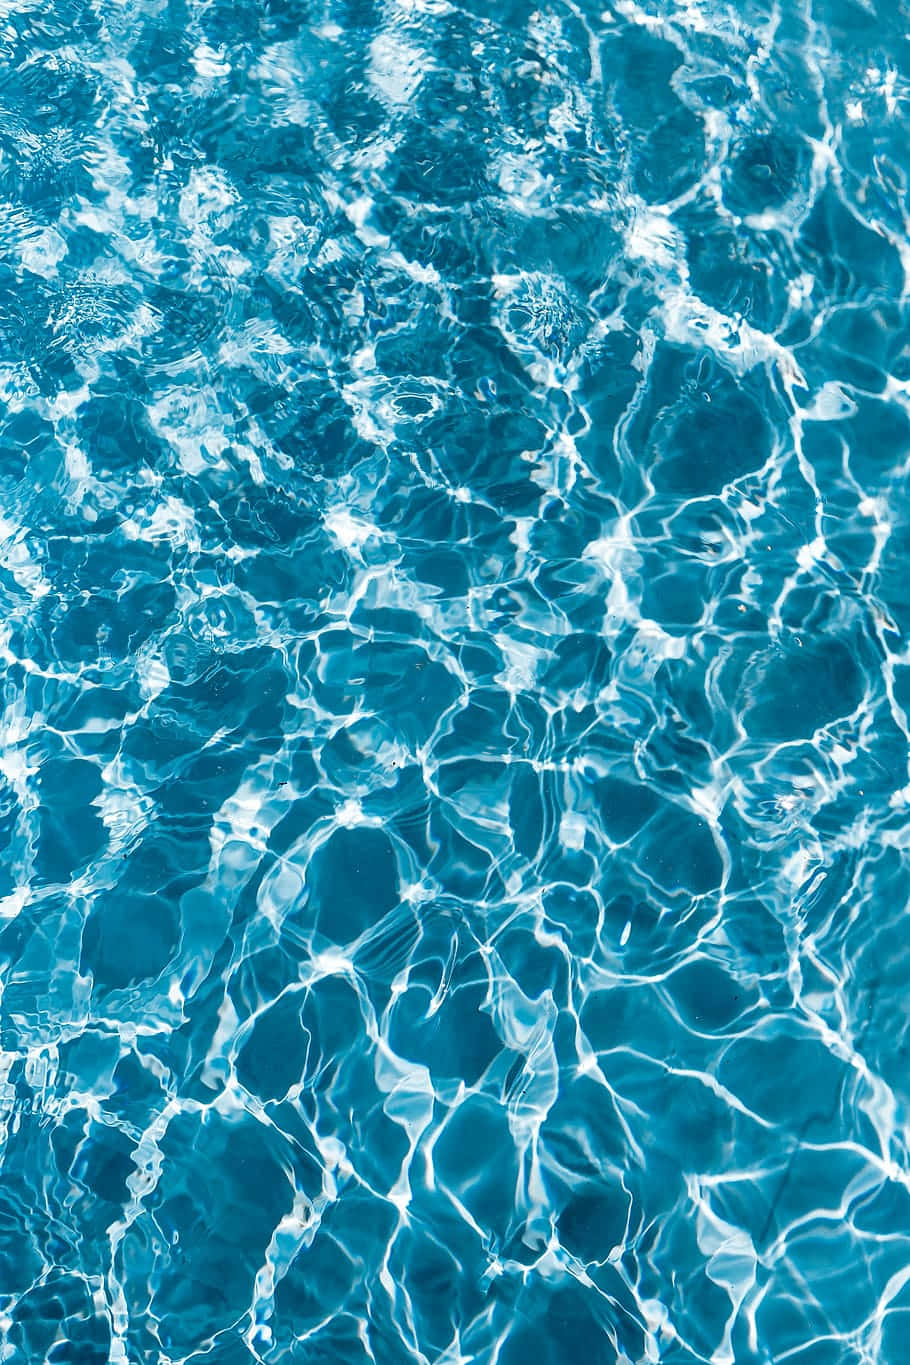 Glaring Blue Green Pool Water Wallpaper